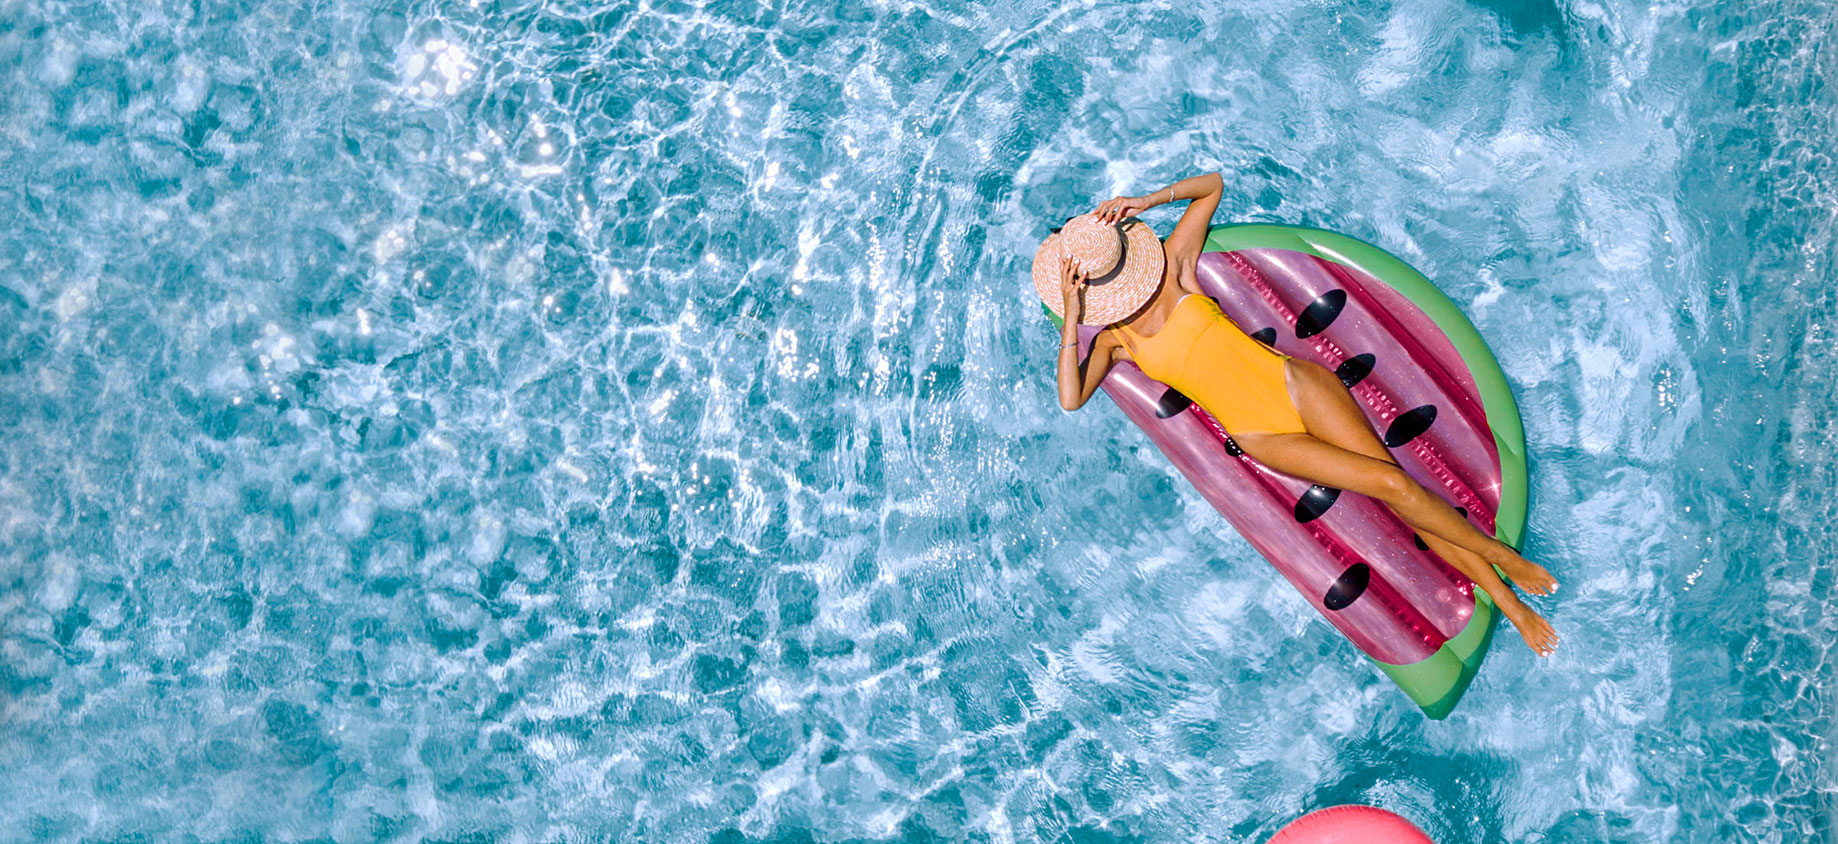 Đi bơi mùa hè: Chuyên gia cảnh báo chú ý nồng độ clo tại bể bơi, tránh gặp rủi ro đáng tiếc - Ảnh 1.